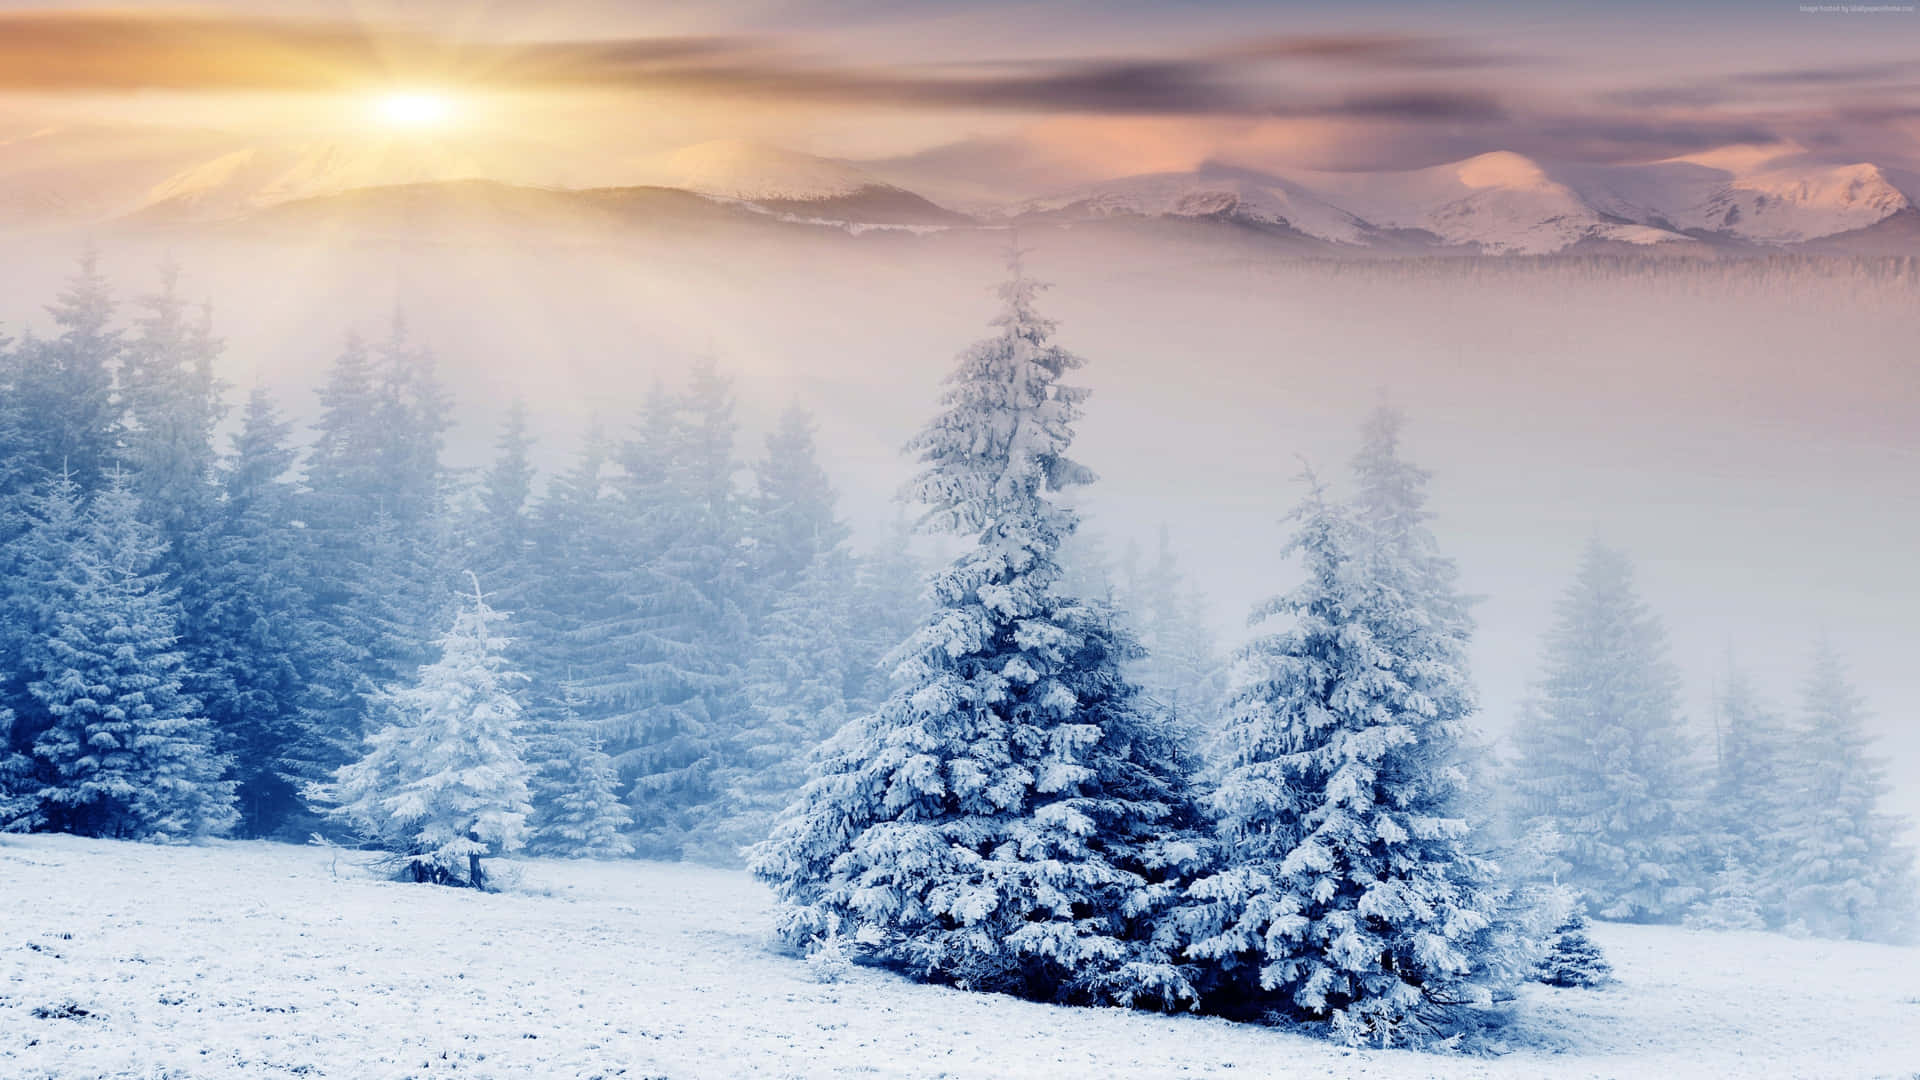 Genießensie Einen Friedlichen Moment, Umgeben Von Der Natur, Während Ein Wunderschöner Wintersonnenuntergang Sich Senkt. Wallpaper